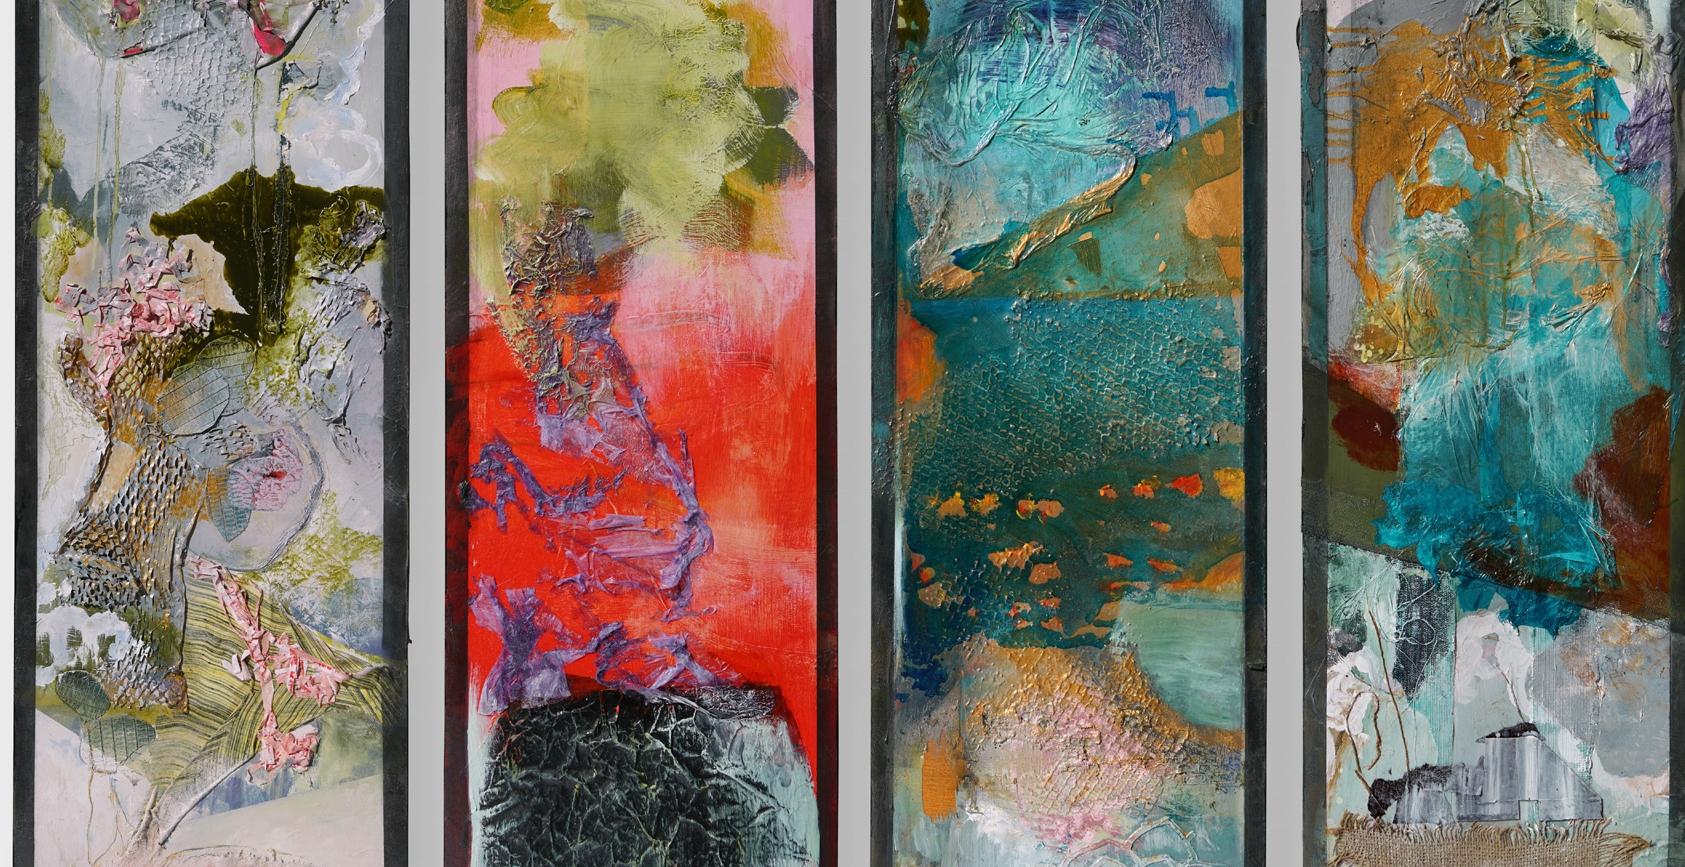 The Four Seasons, mixed media , Abstract Expressionism, Four Panels 48x15x2 each - Abstract Expressionist Mixed Media Art by Joan Bohn